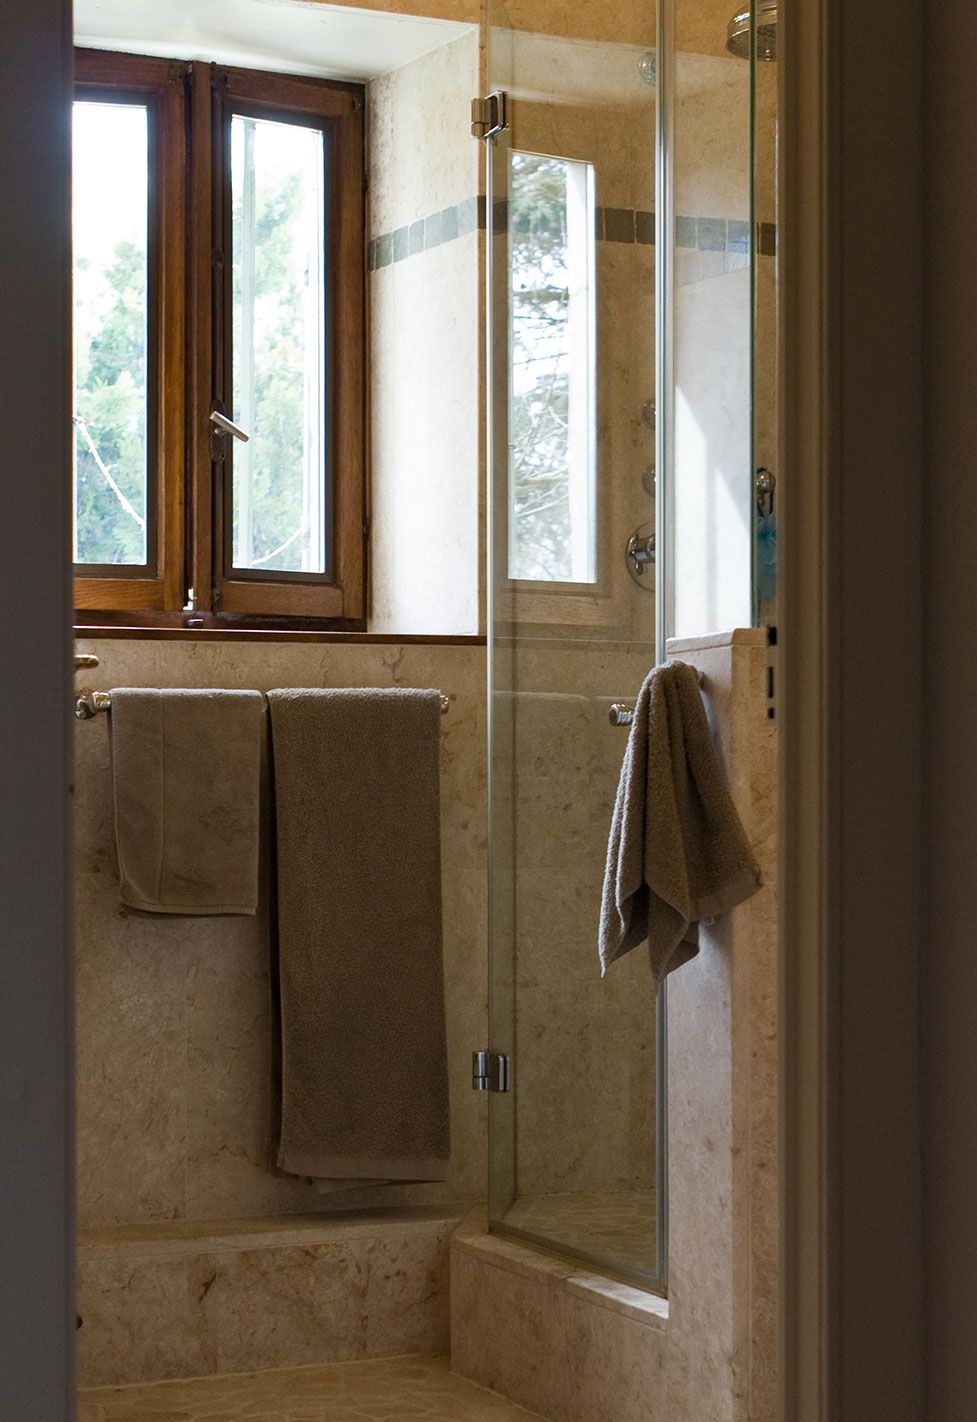 Salle de douche de cette maison ancienne à Carouge. Réalisation par Anne-Laure Ferry-Adam, architecte d'intérieur à Genève.